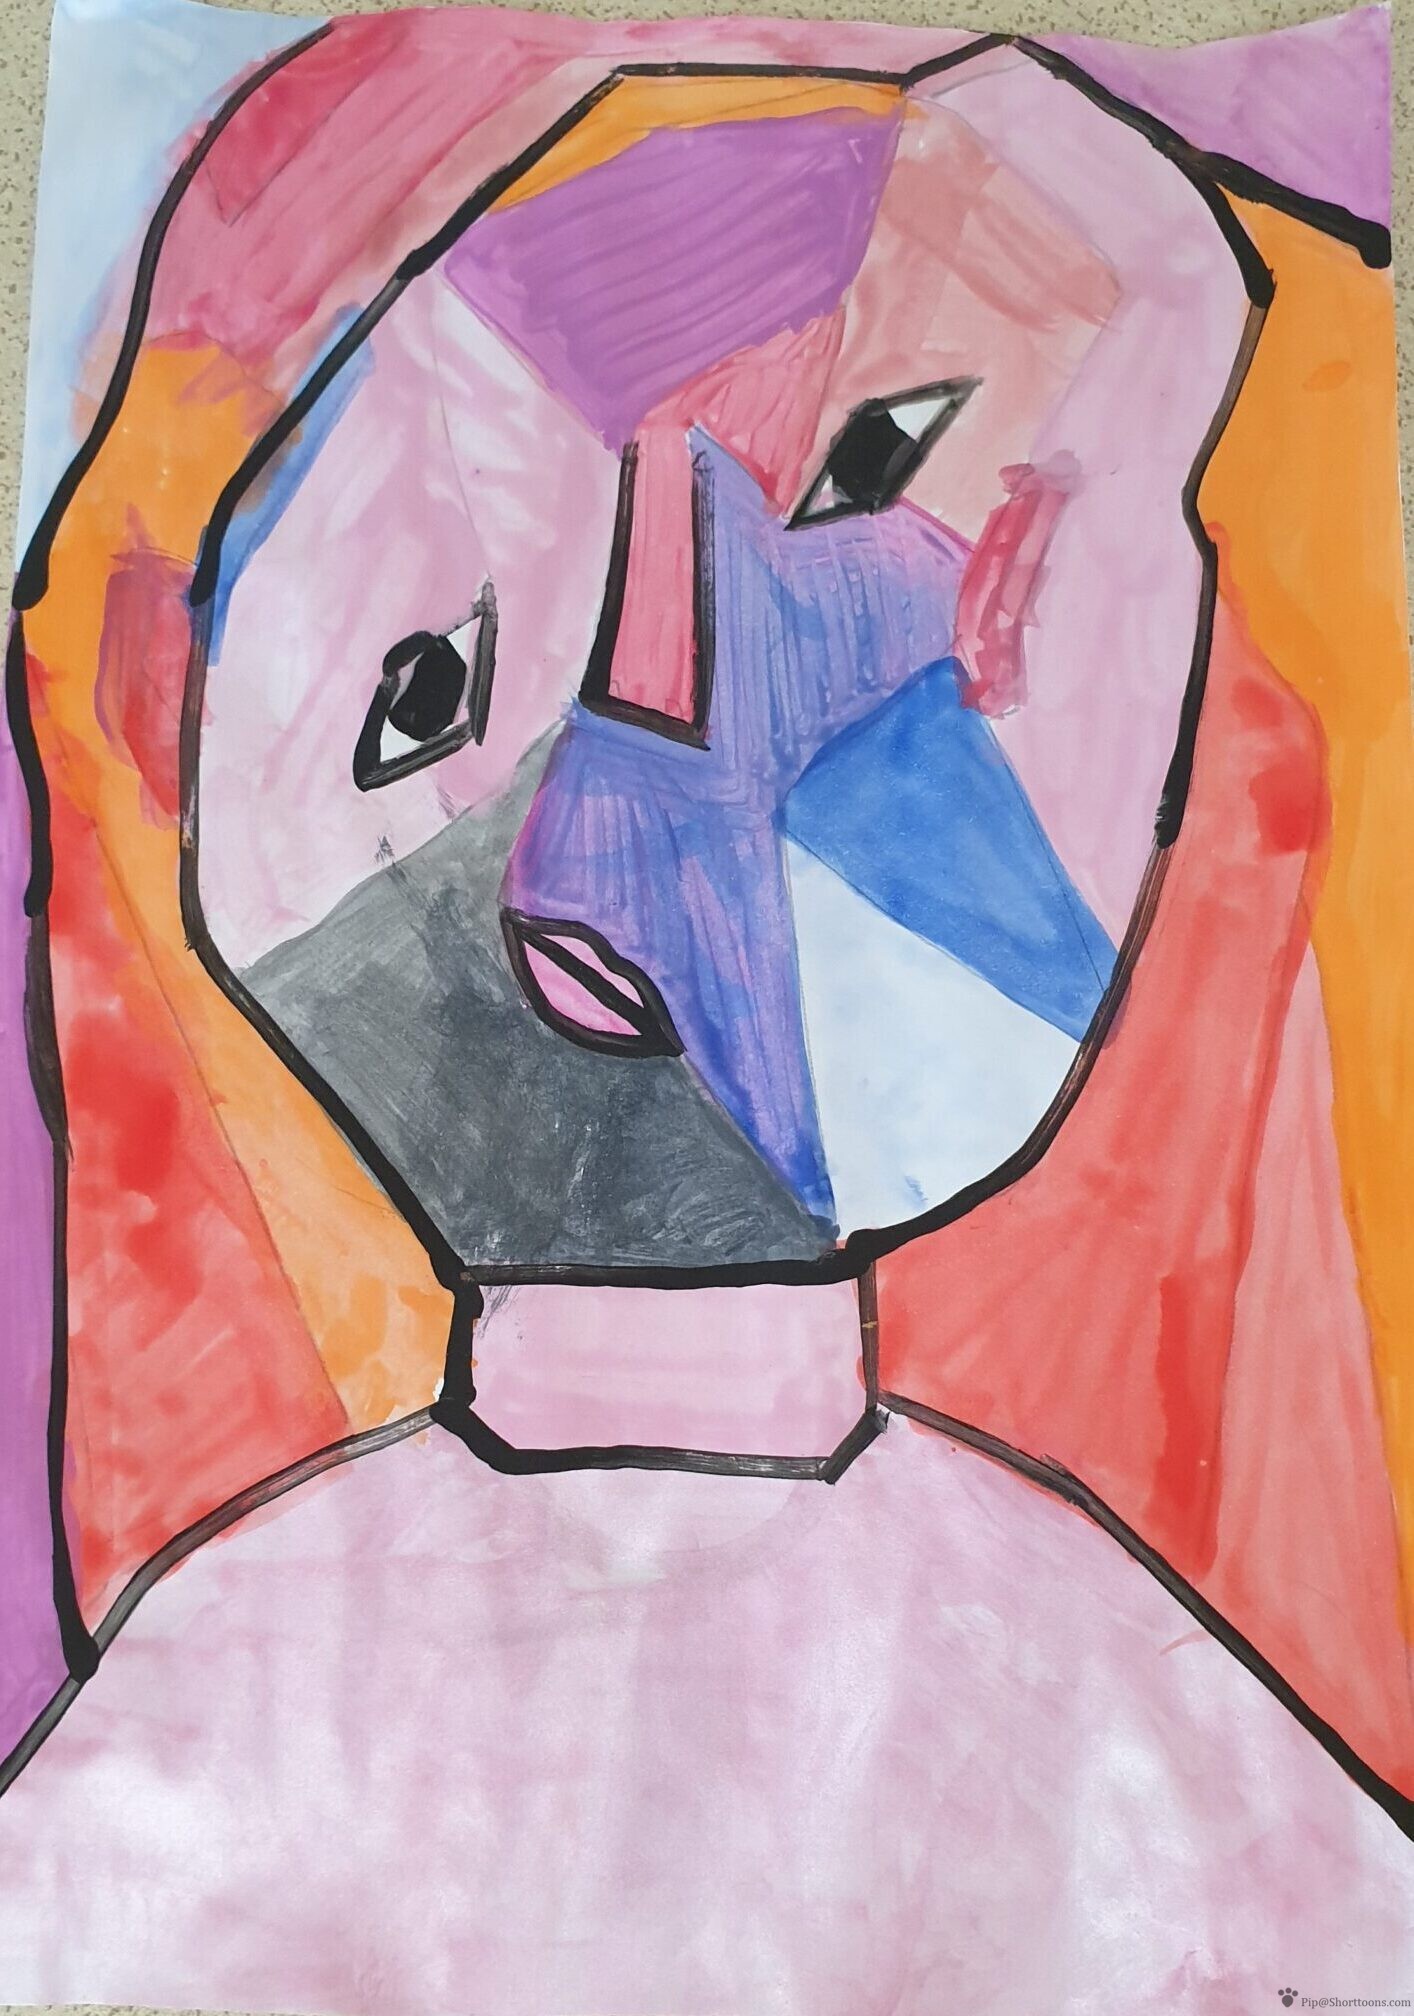 Evs Picasso